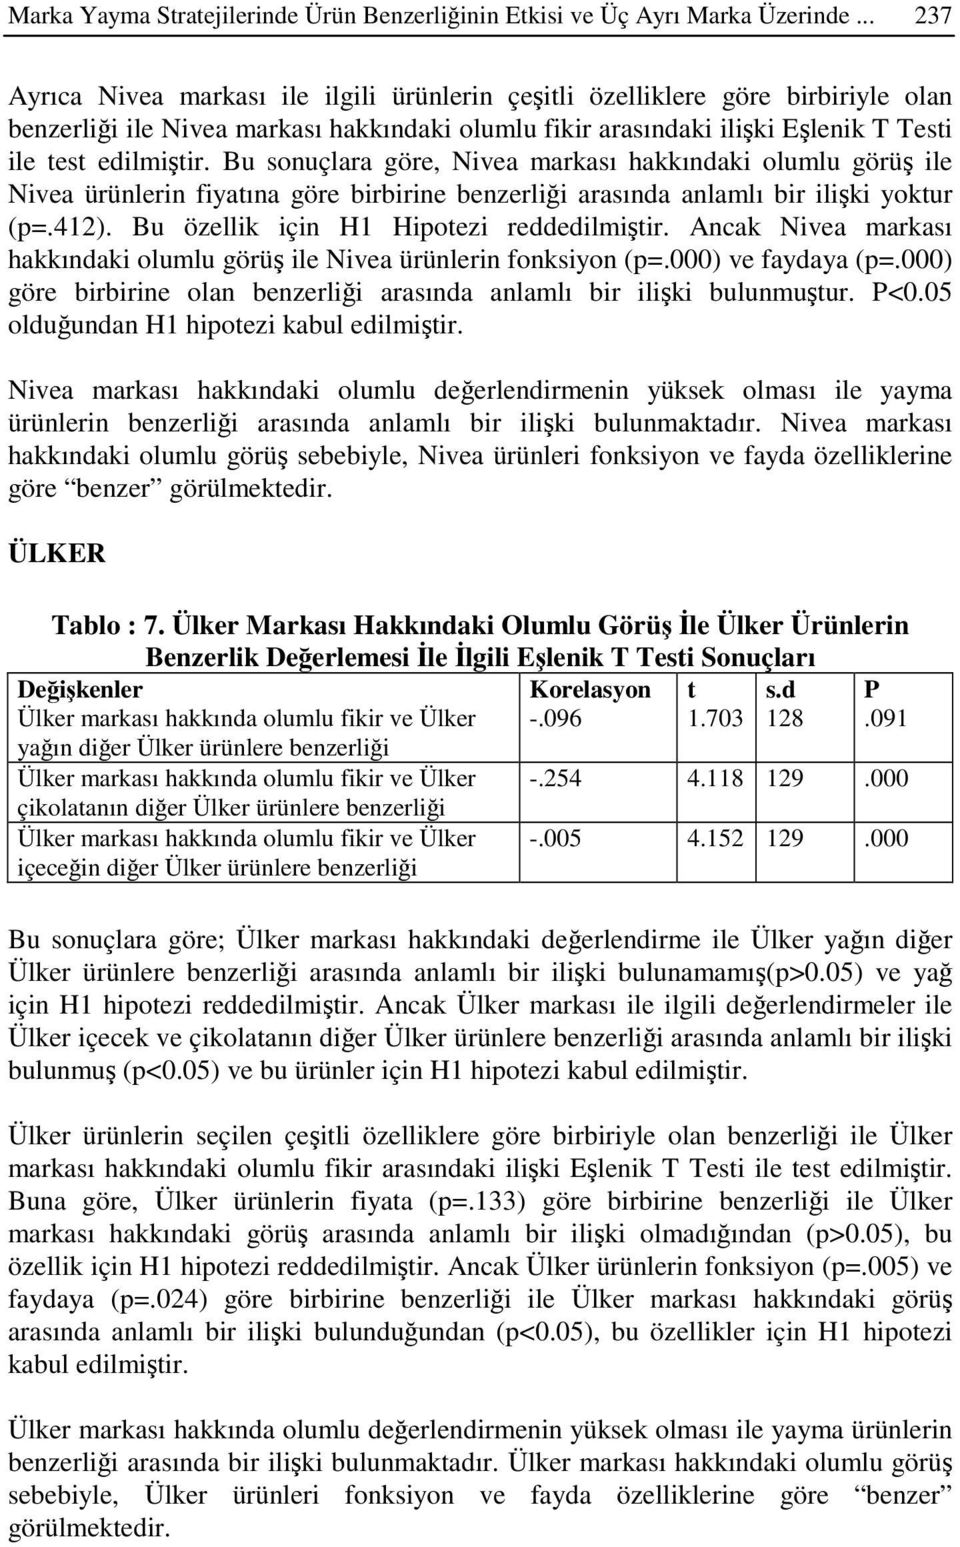 Bu sonuçlara göre, Nivea markası hakkındaki olumlu görü ile Nivea ürünlerin fiyatına göre birbirine benzerlii arasında anlamlı bir iliki yoktur (p=.412). Bu özellik için H1 Hipotezi reddedilmitir.